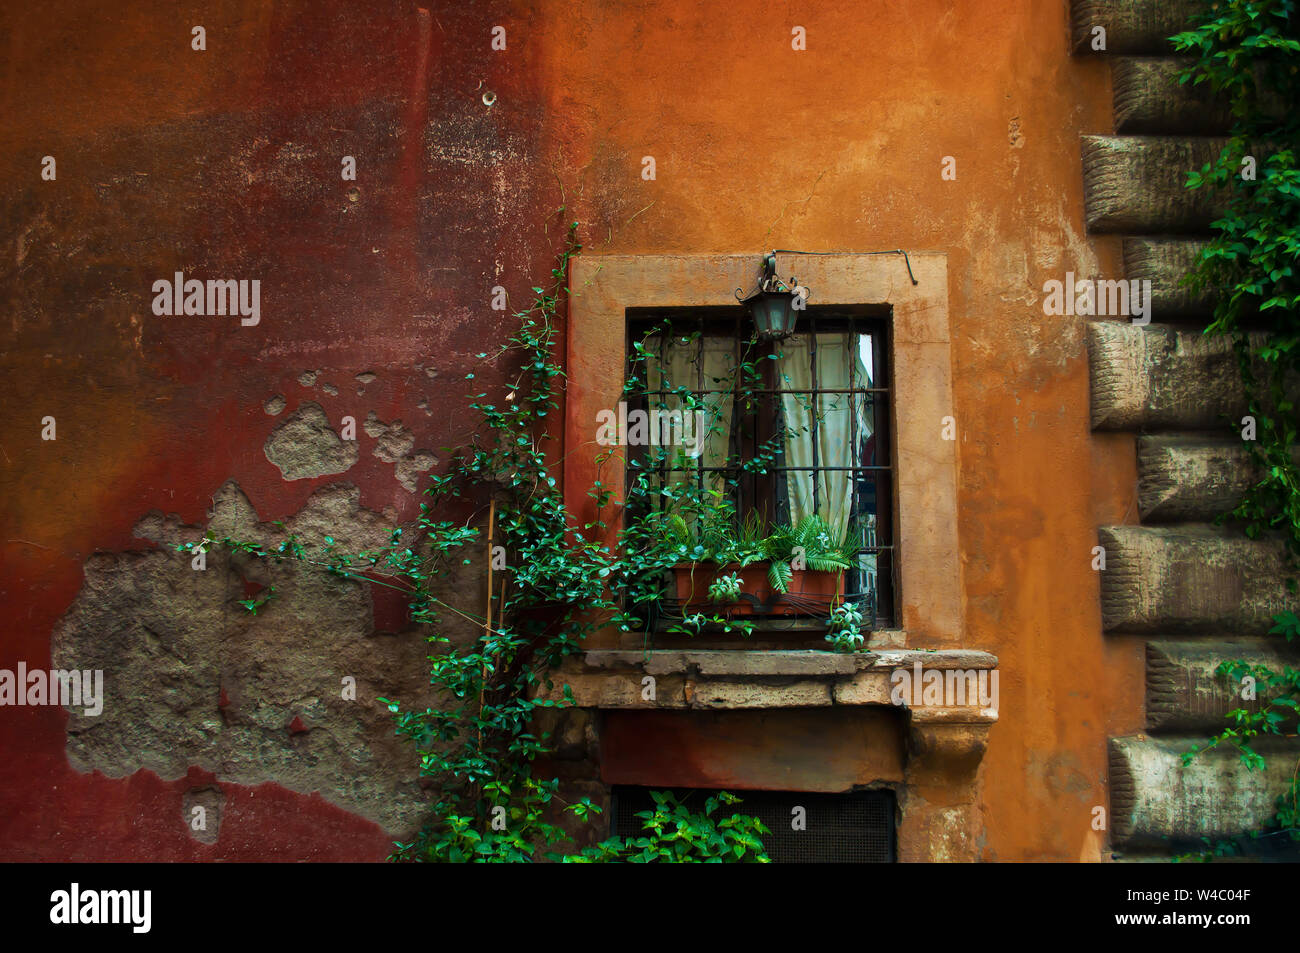 Uno vintage lanterna di ferro su una finestra su un arancione e parete rossa. Piante verdi in un vaso di fiori su un davanzale intrecciano con piante verdi in città ce Foto Stock